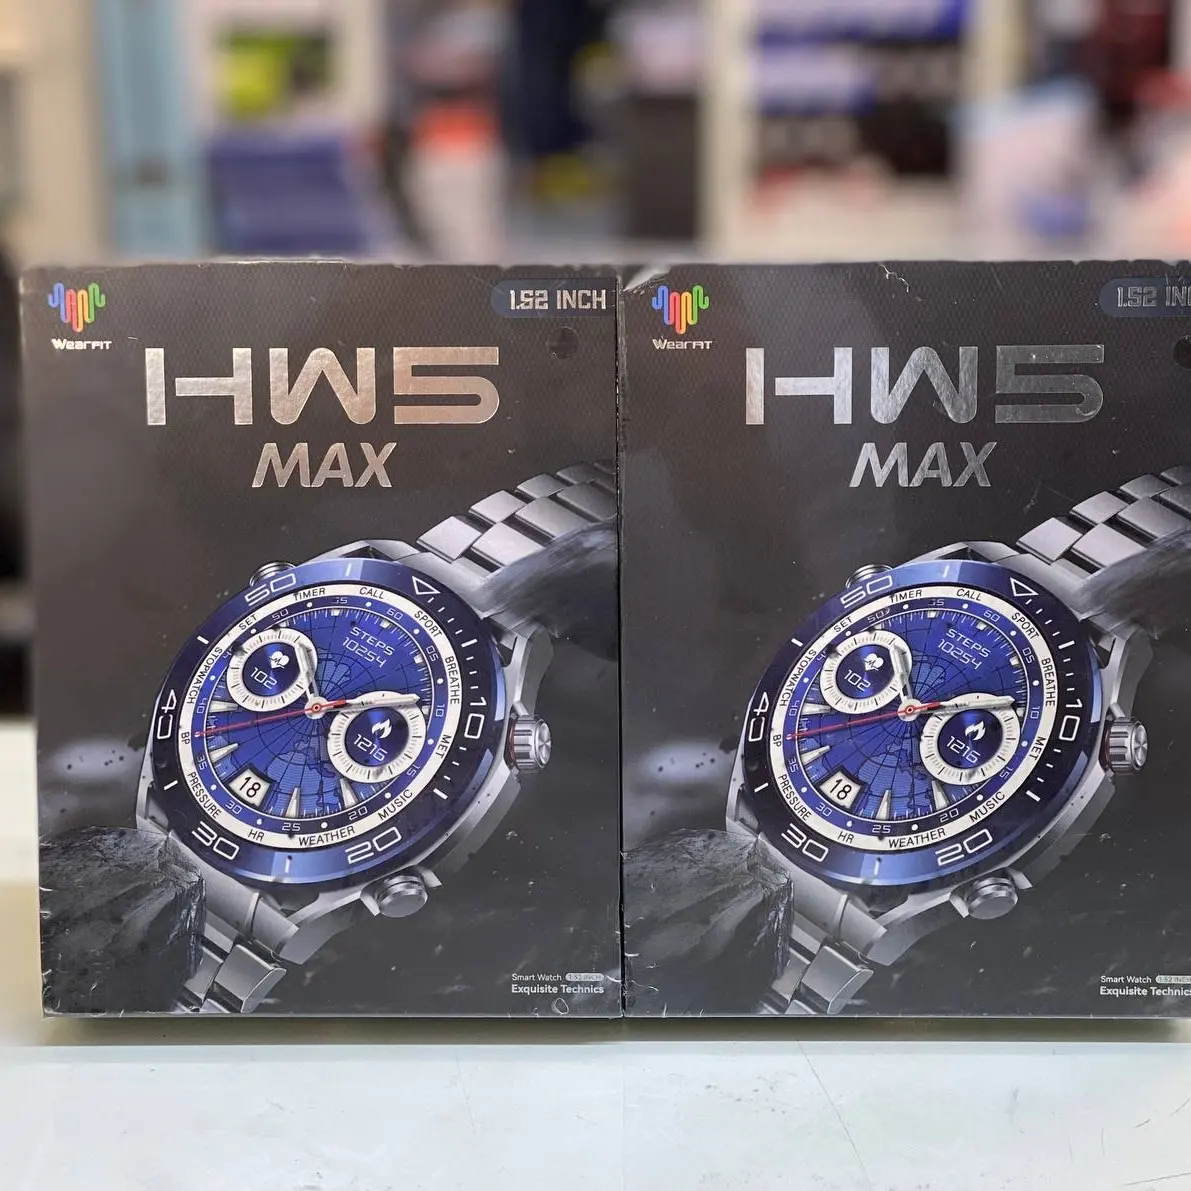 ساعت هوشمند HW5 MAX